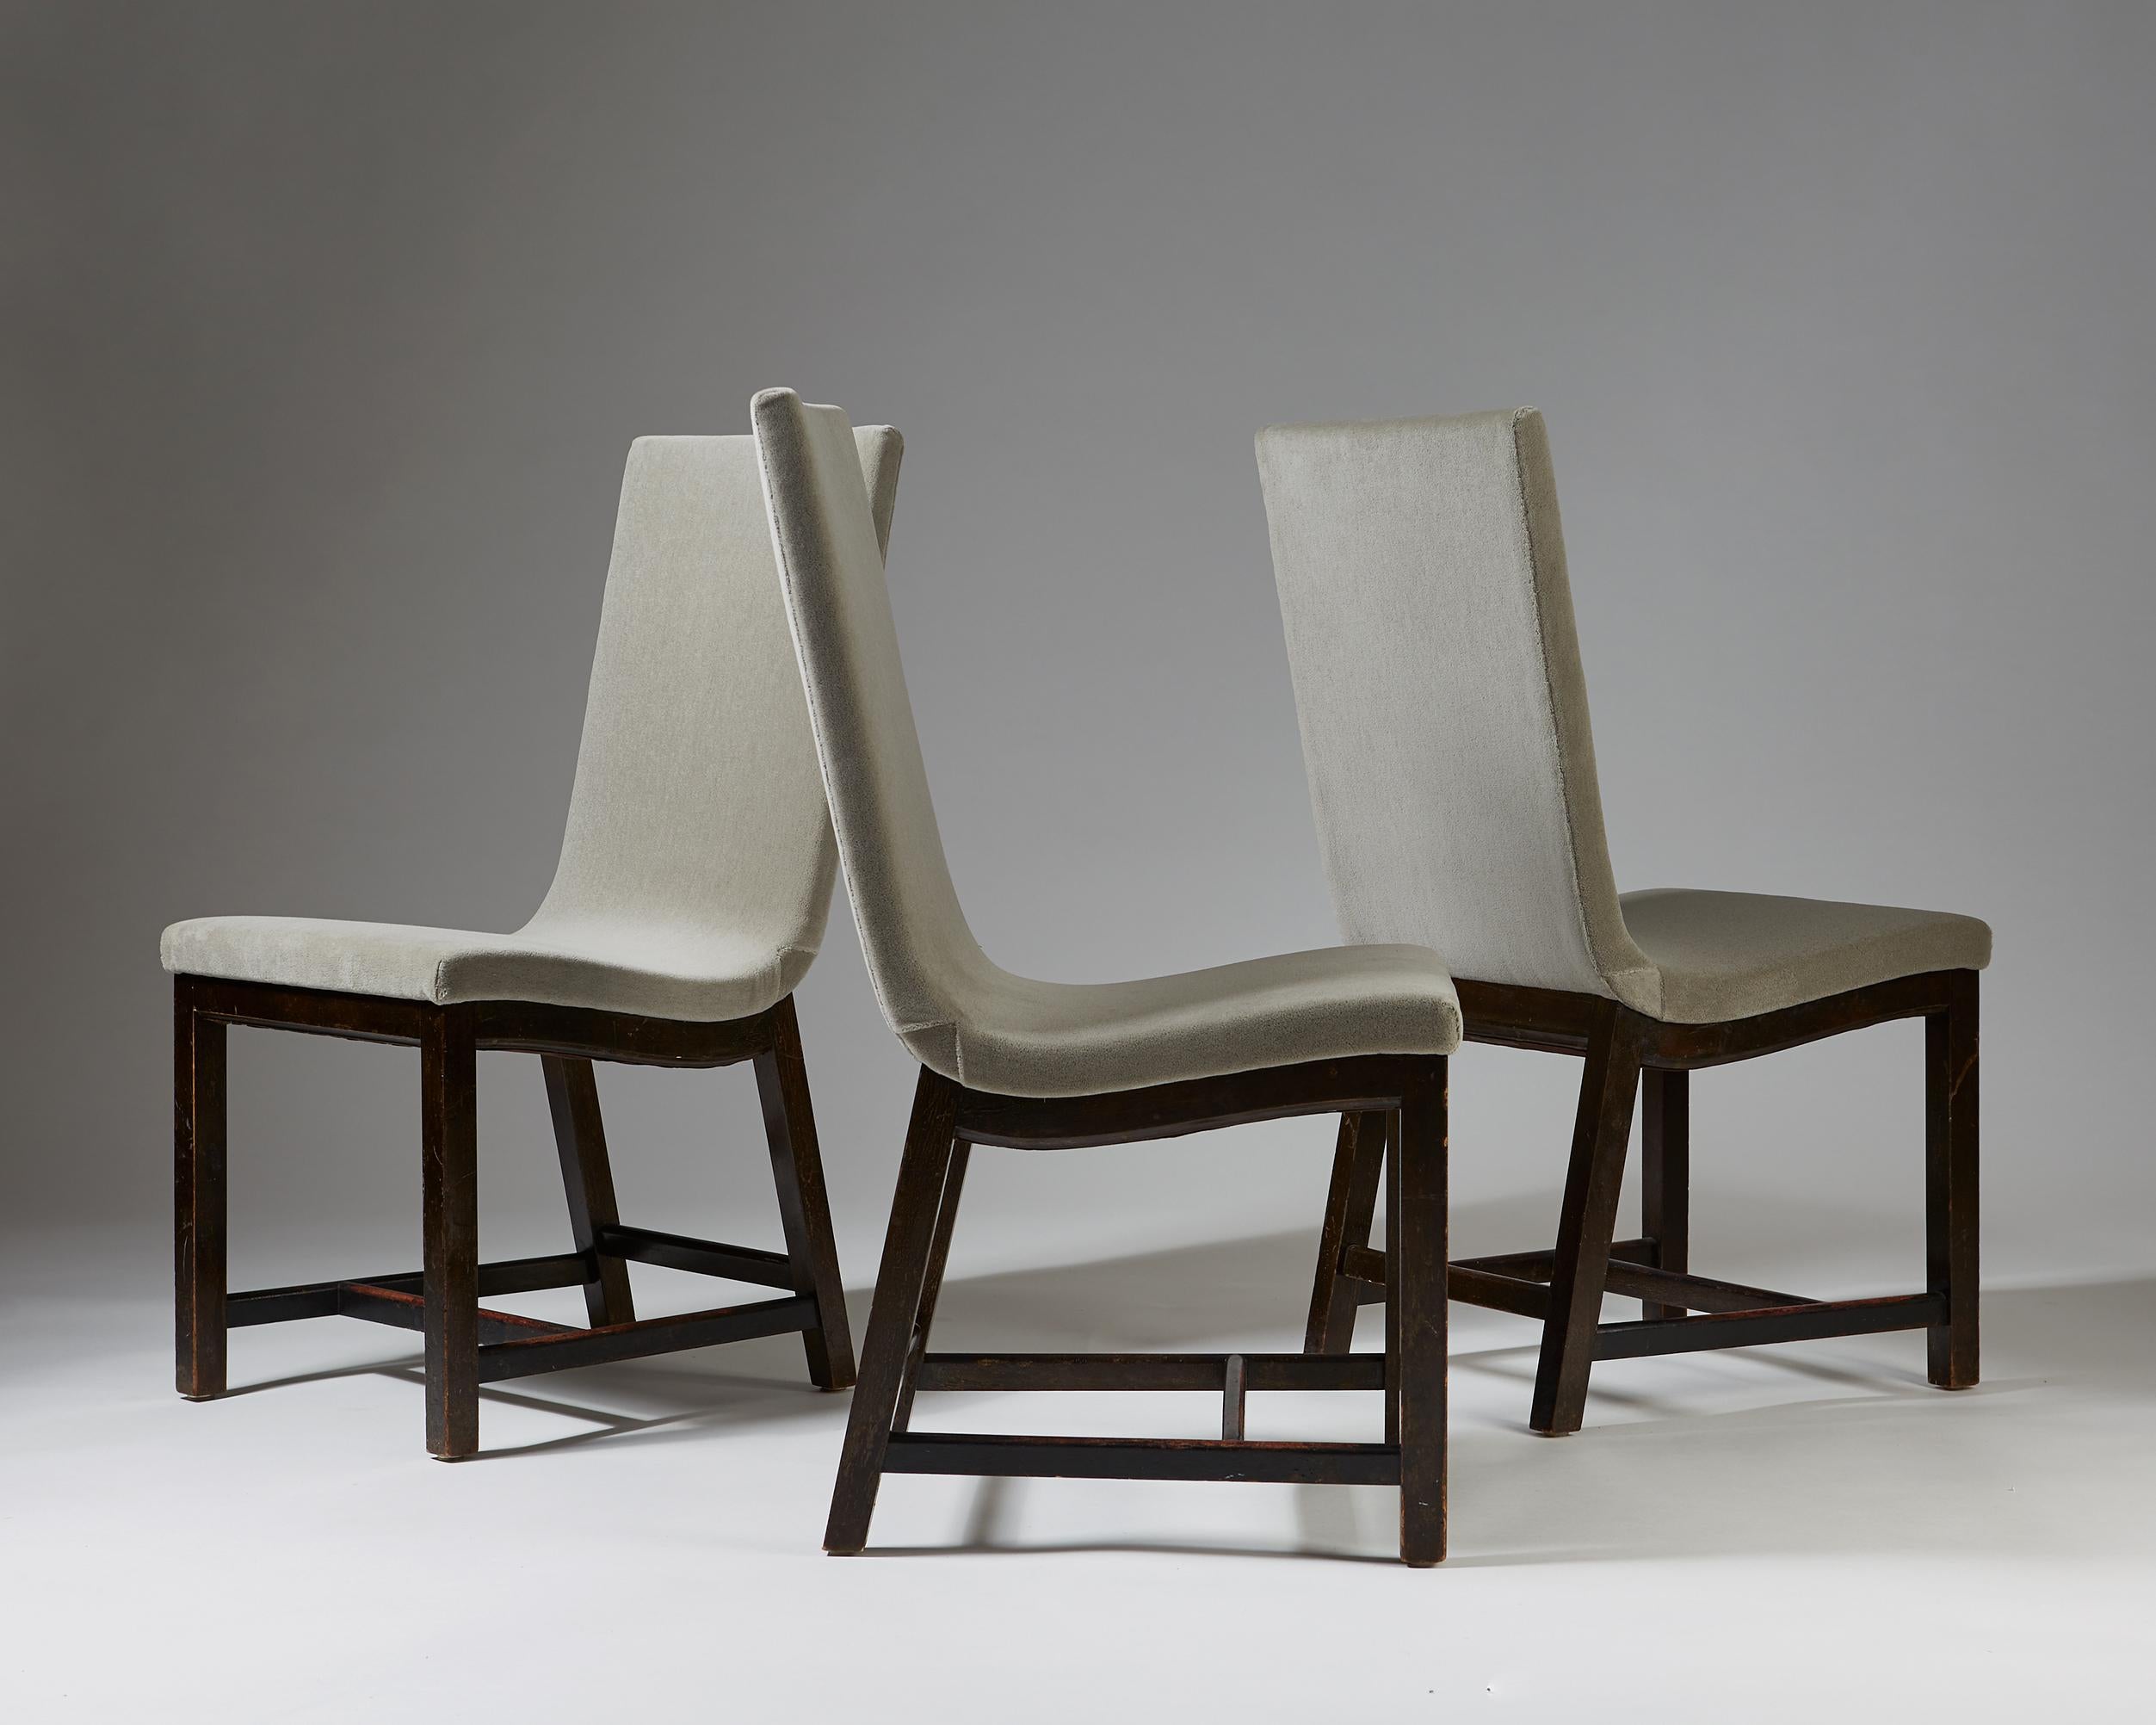 Scandinavian Modern Set of Three Chairs “Typenko” by Axel Einar Hjorth, Nordiska Kompaniet, Sweden For Sale